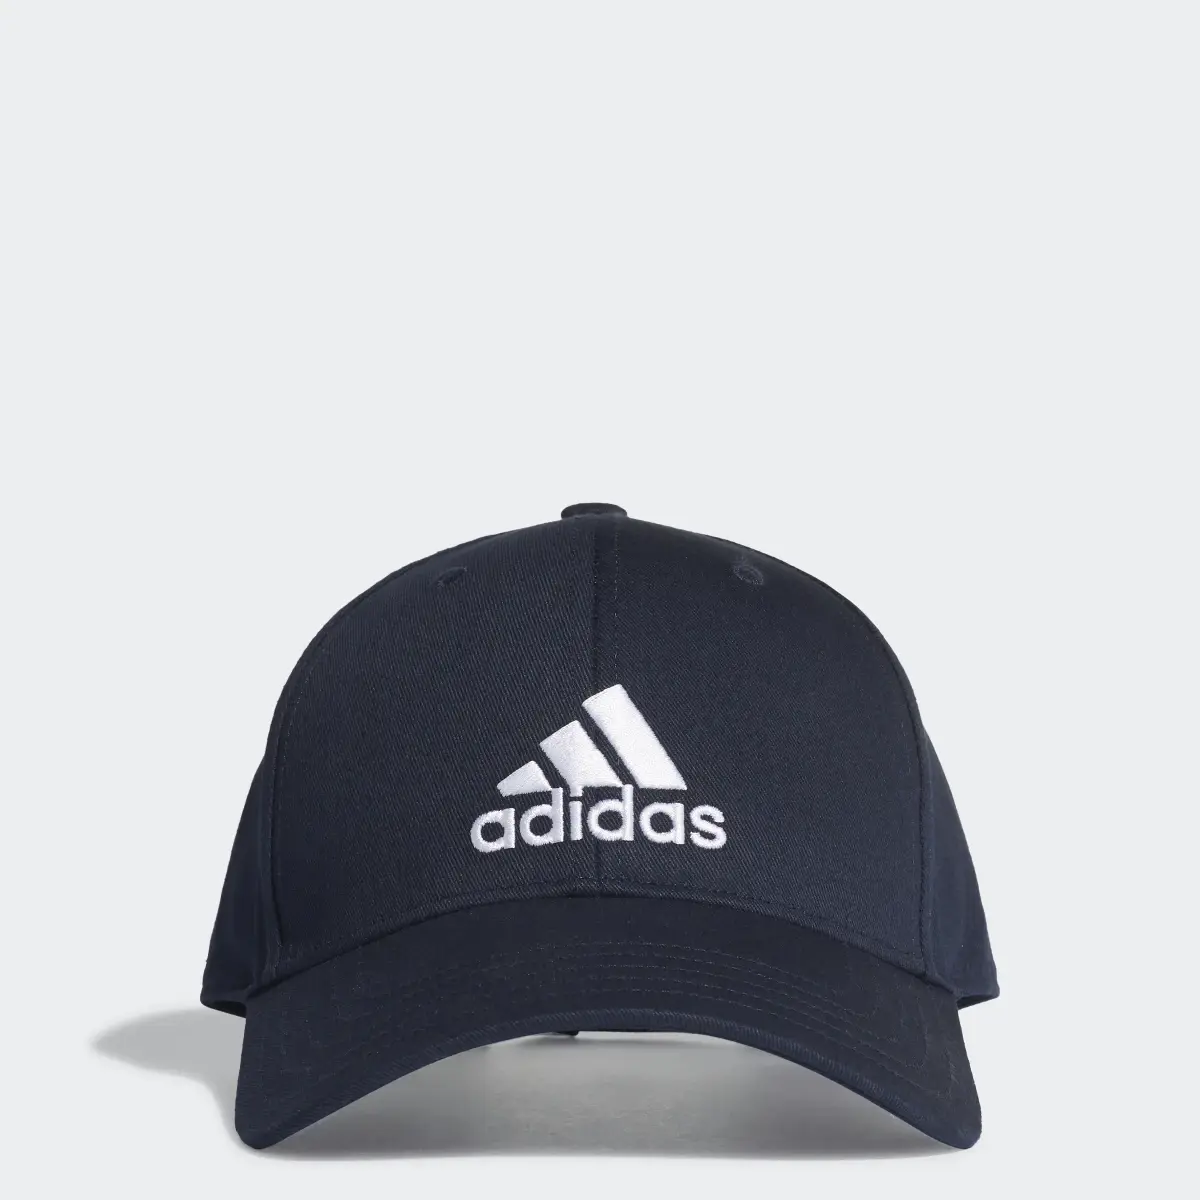 Adidas Baseball Cap. 1